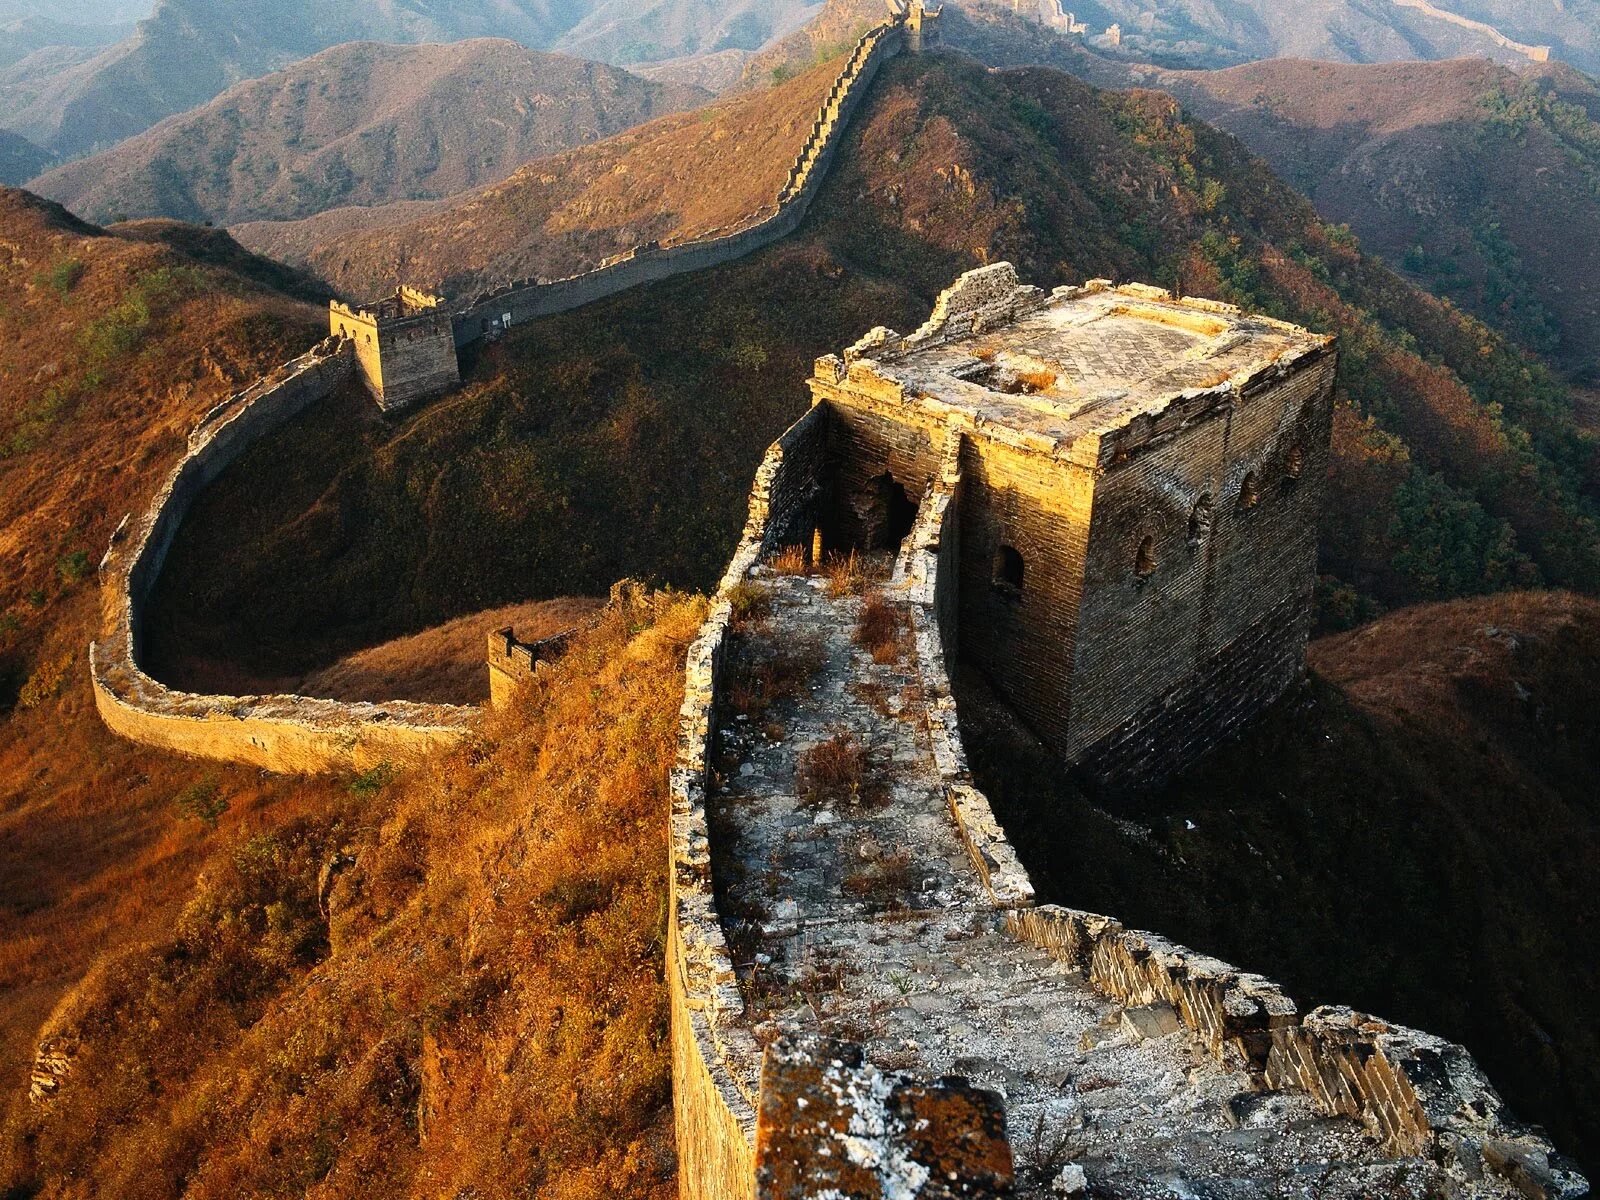 Части великой китайской стены. Великая китайская стена бойницы. Великая китайская стена цинхай. Башни и бойницы Великой китайской стены. Еликаякитайская стена.